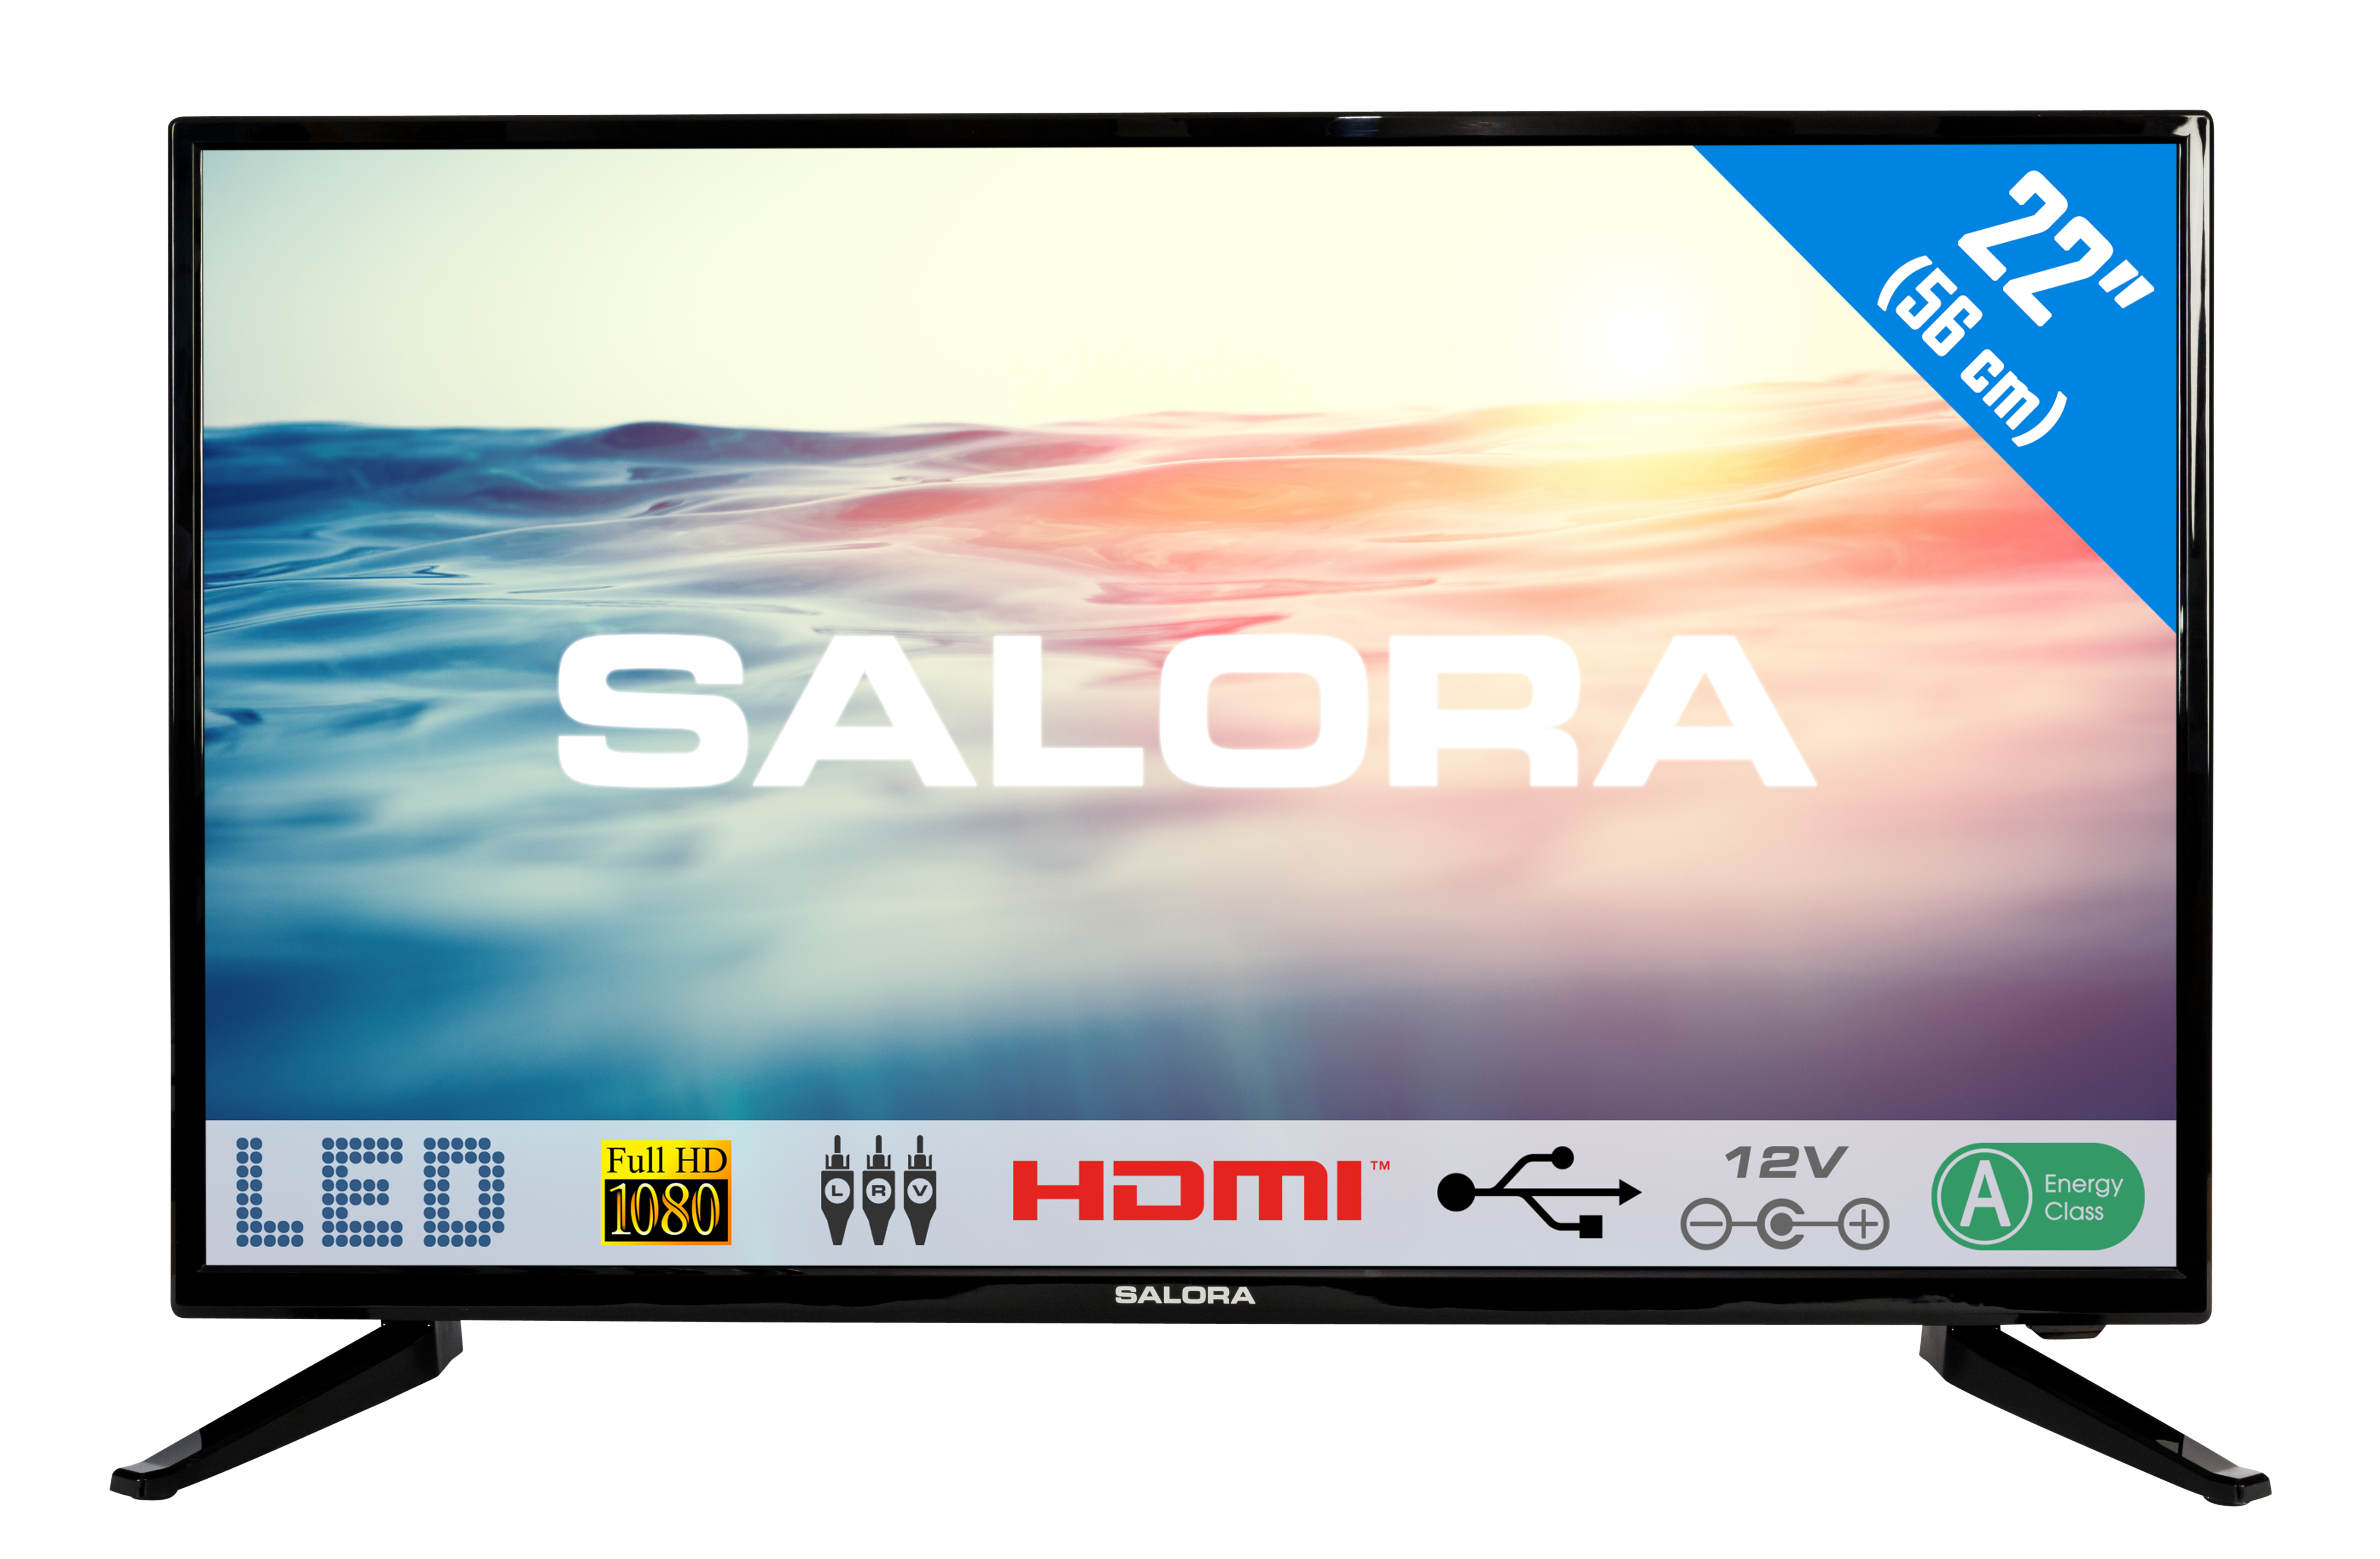 Salora 1600 series 22LED1600 TV